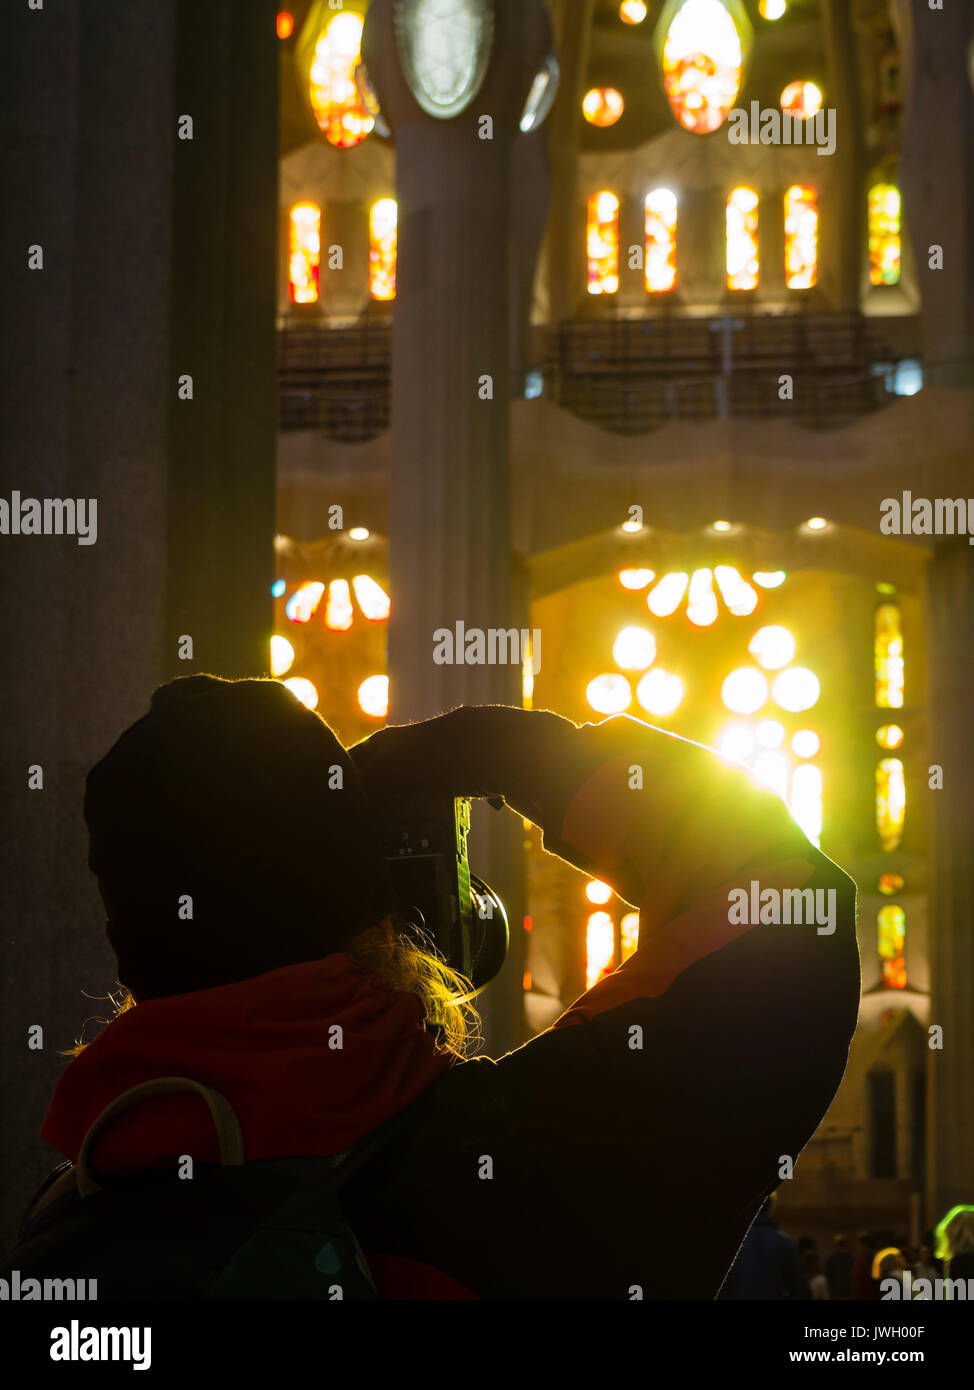 Un turista está tomando fotografías de las ventanas pintadas de la fachada occidental dentro de la catedral de la Sagrada Familia de Barcelona. La todavía inacabada por landmark Foto de stock